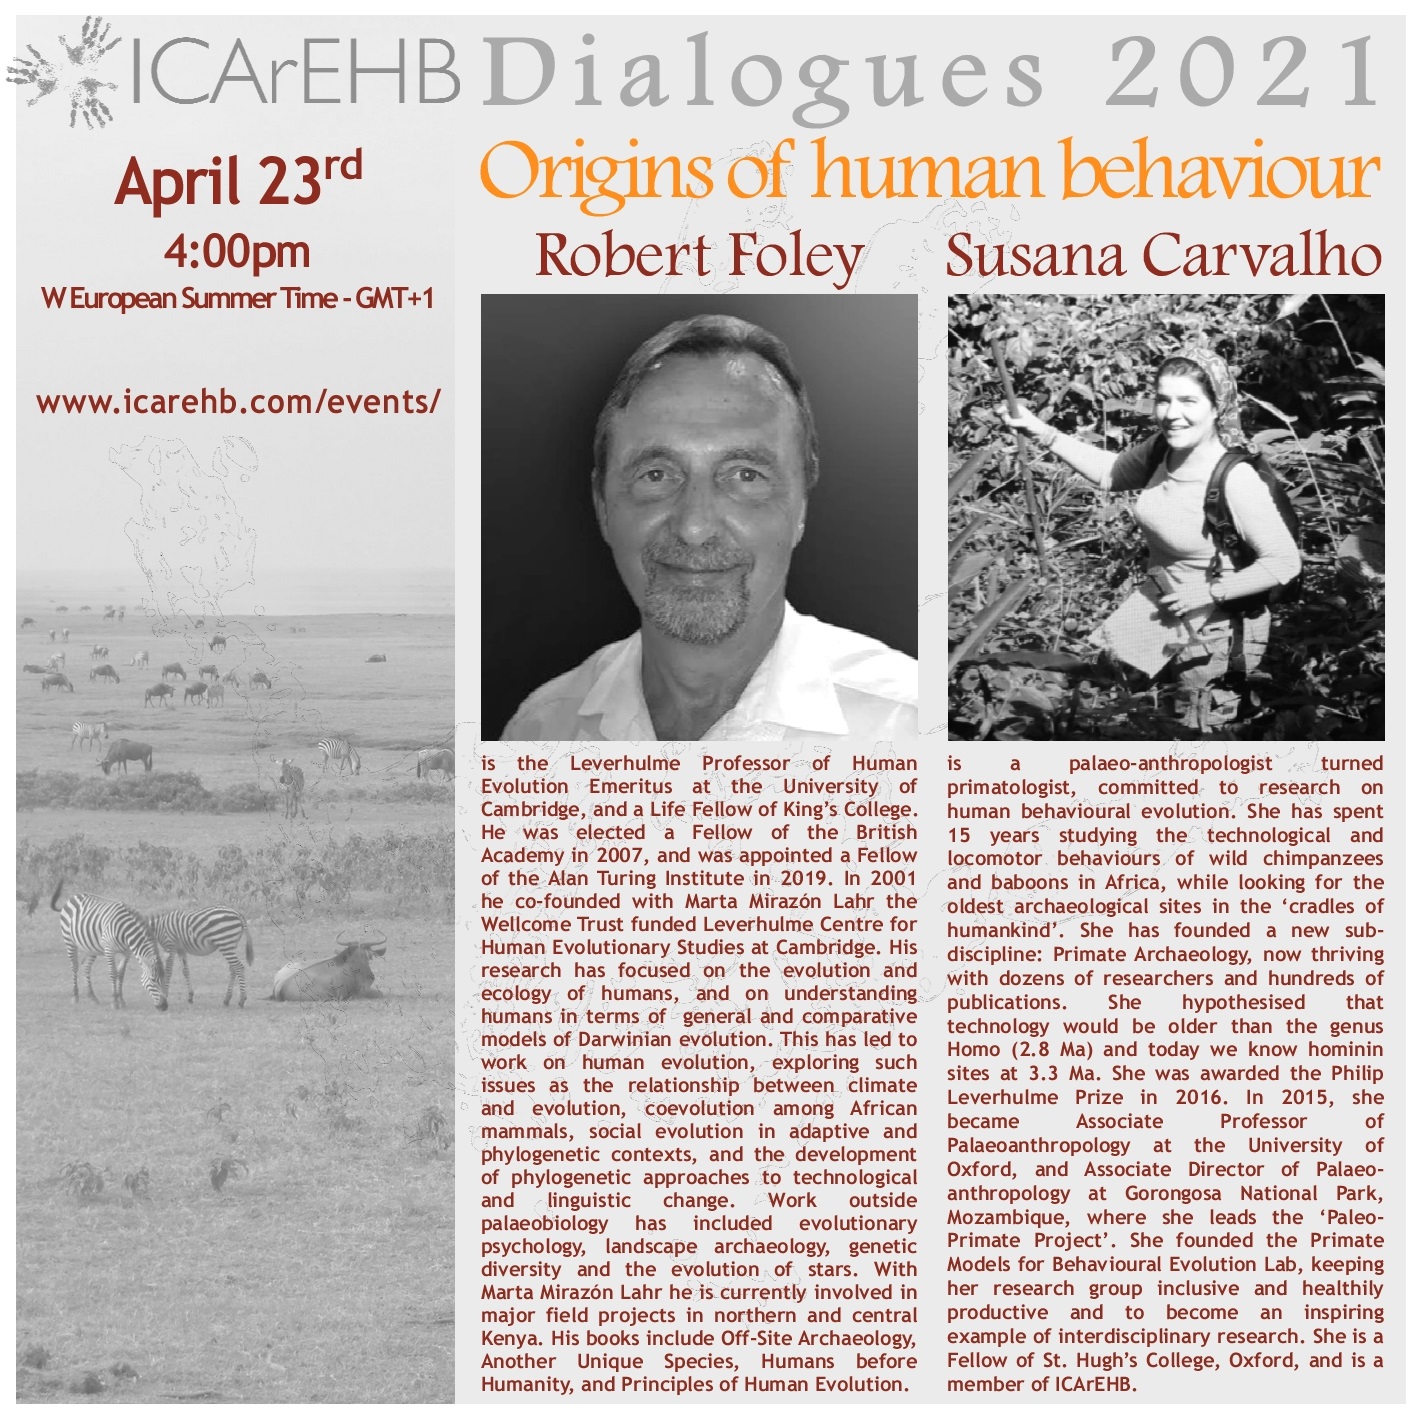 ICArEHB Dialogues presents “Origins of Human Behaviour”